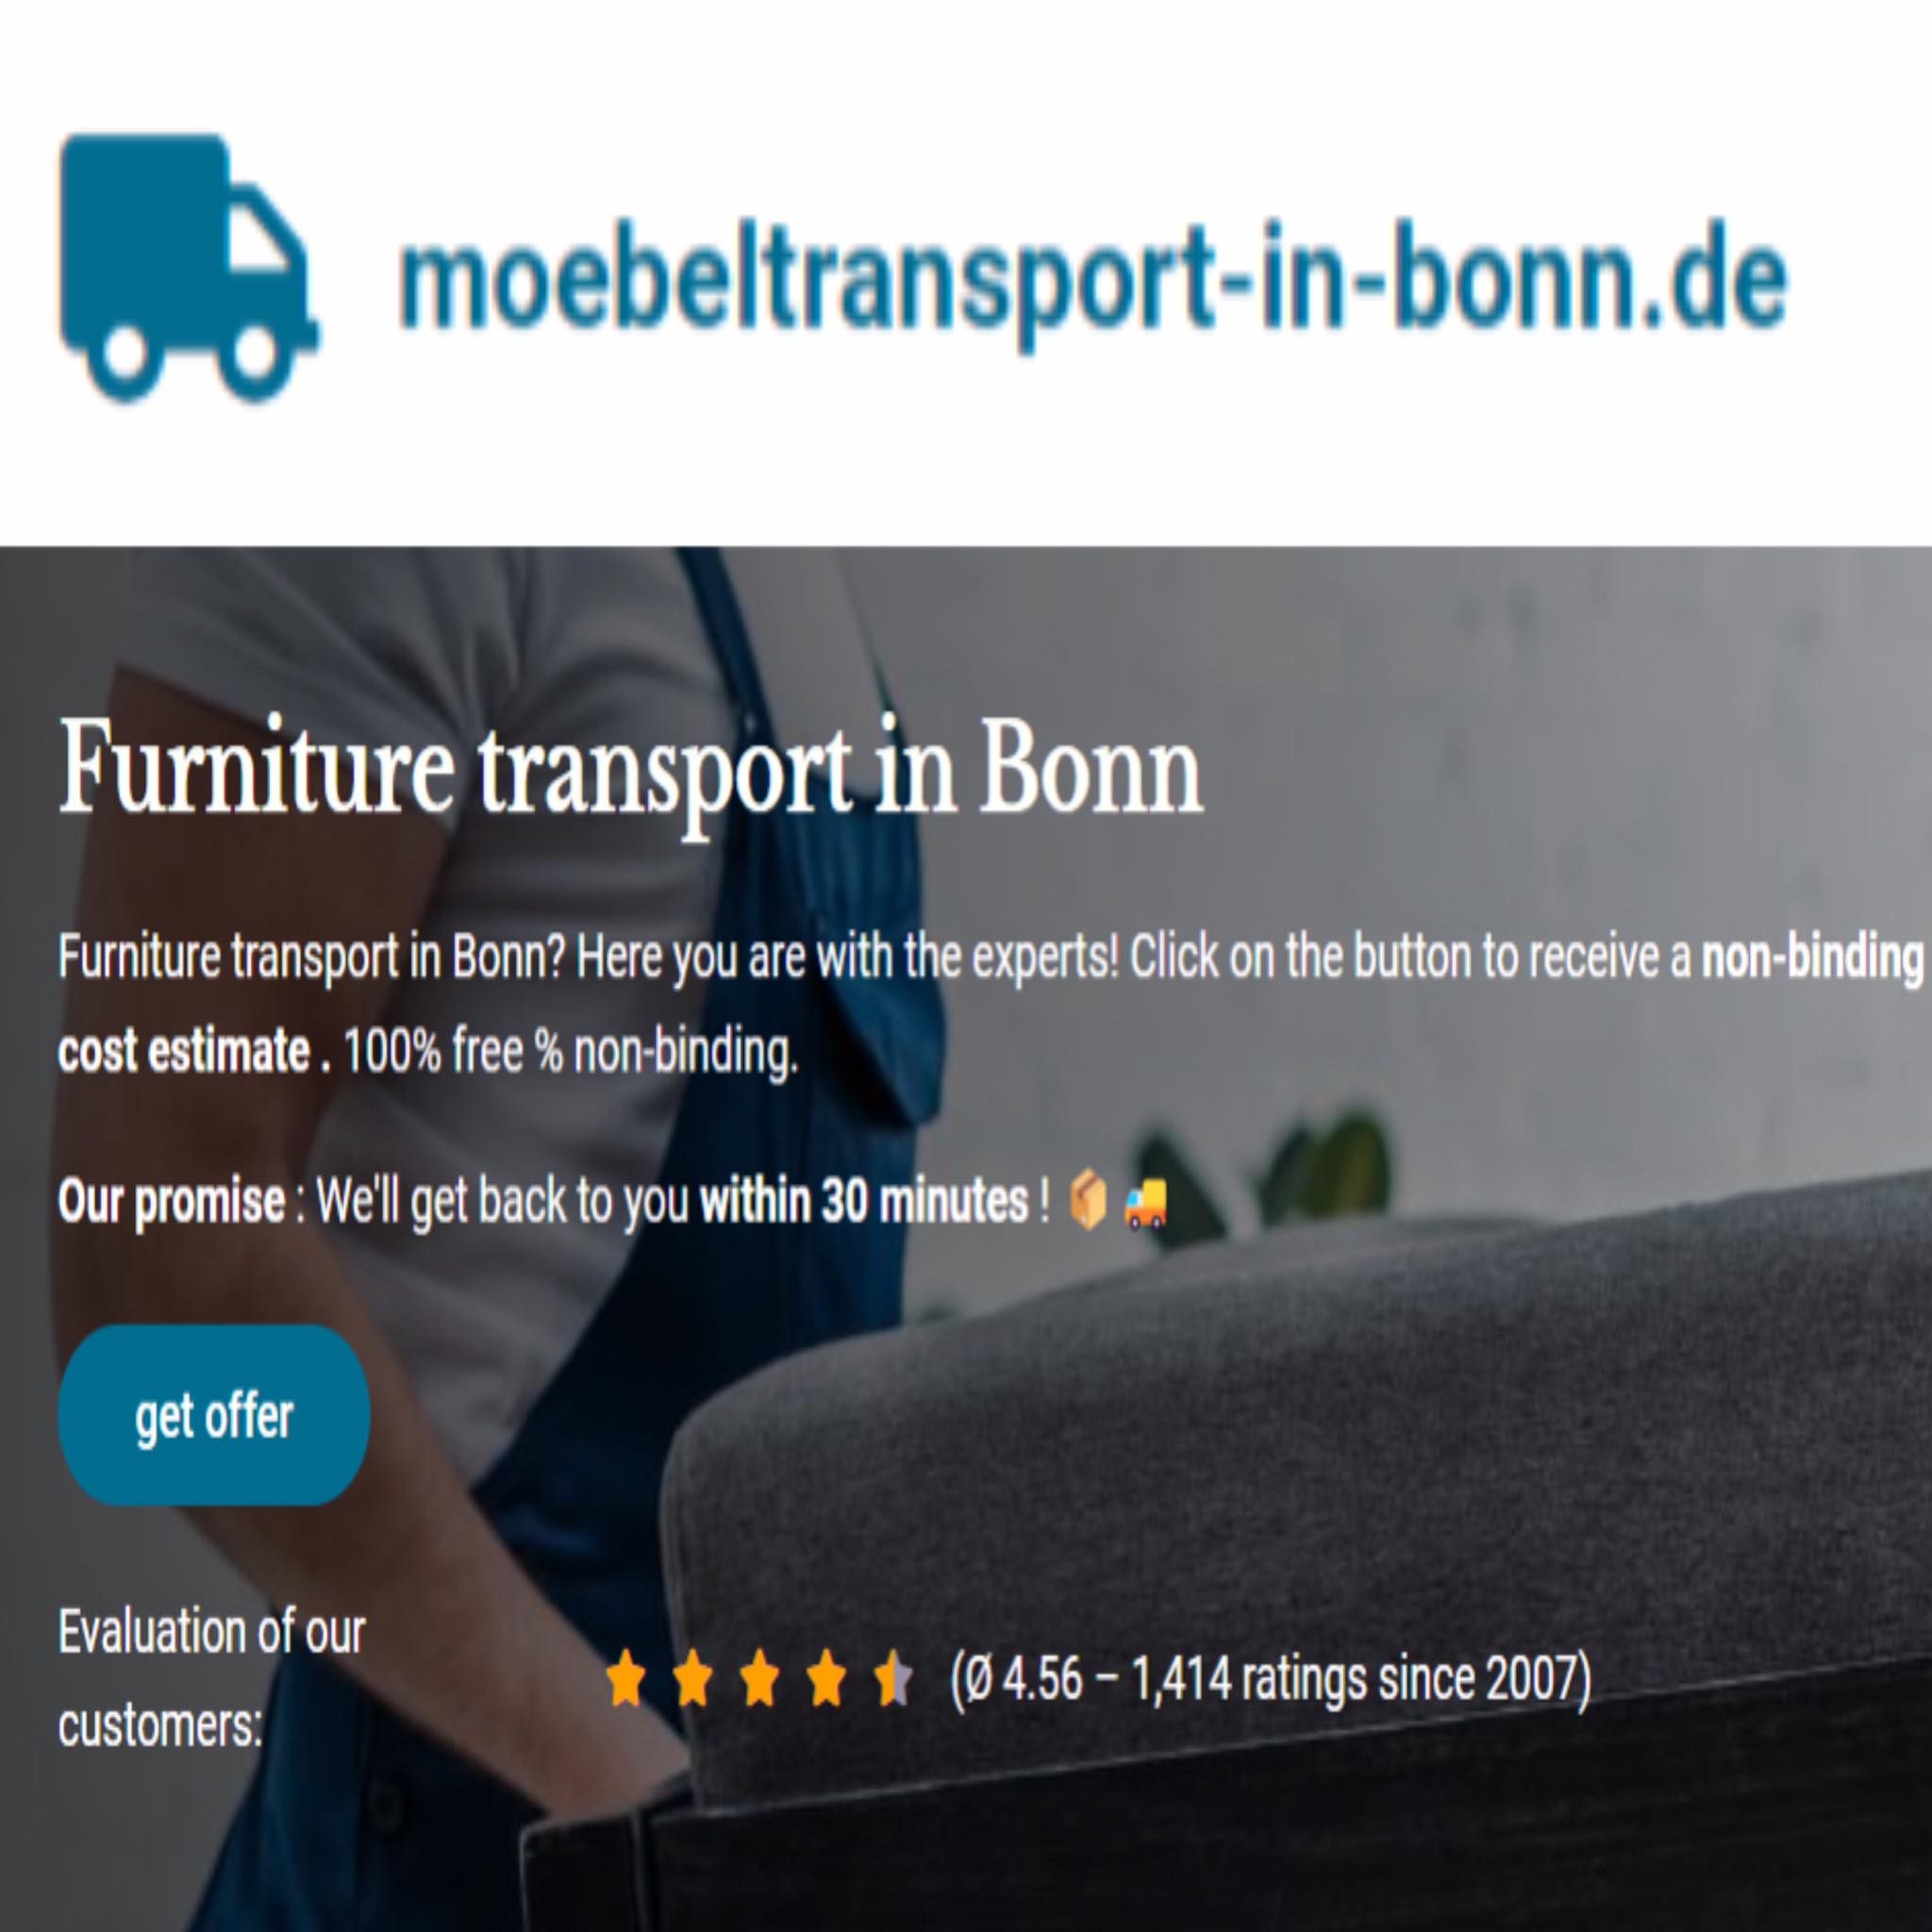 moebeltransport-in-bonn.de